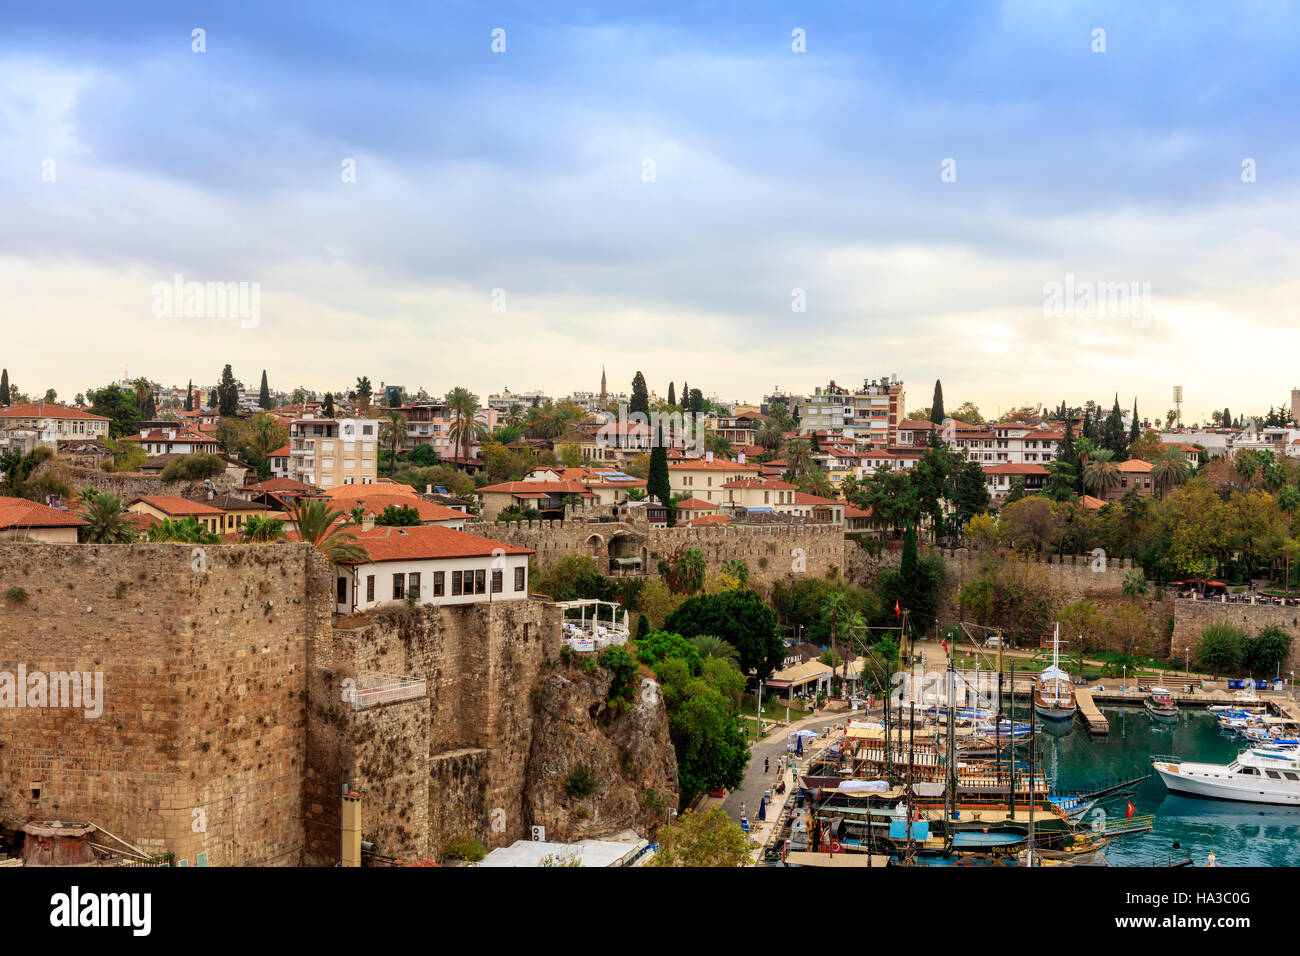 Petit port de plaisance et la vieille ville historique d'Antalya, connu sous le nom de Kaleici. Banque D'Images